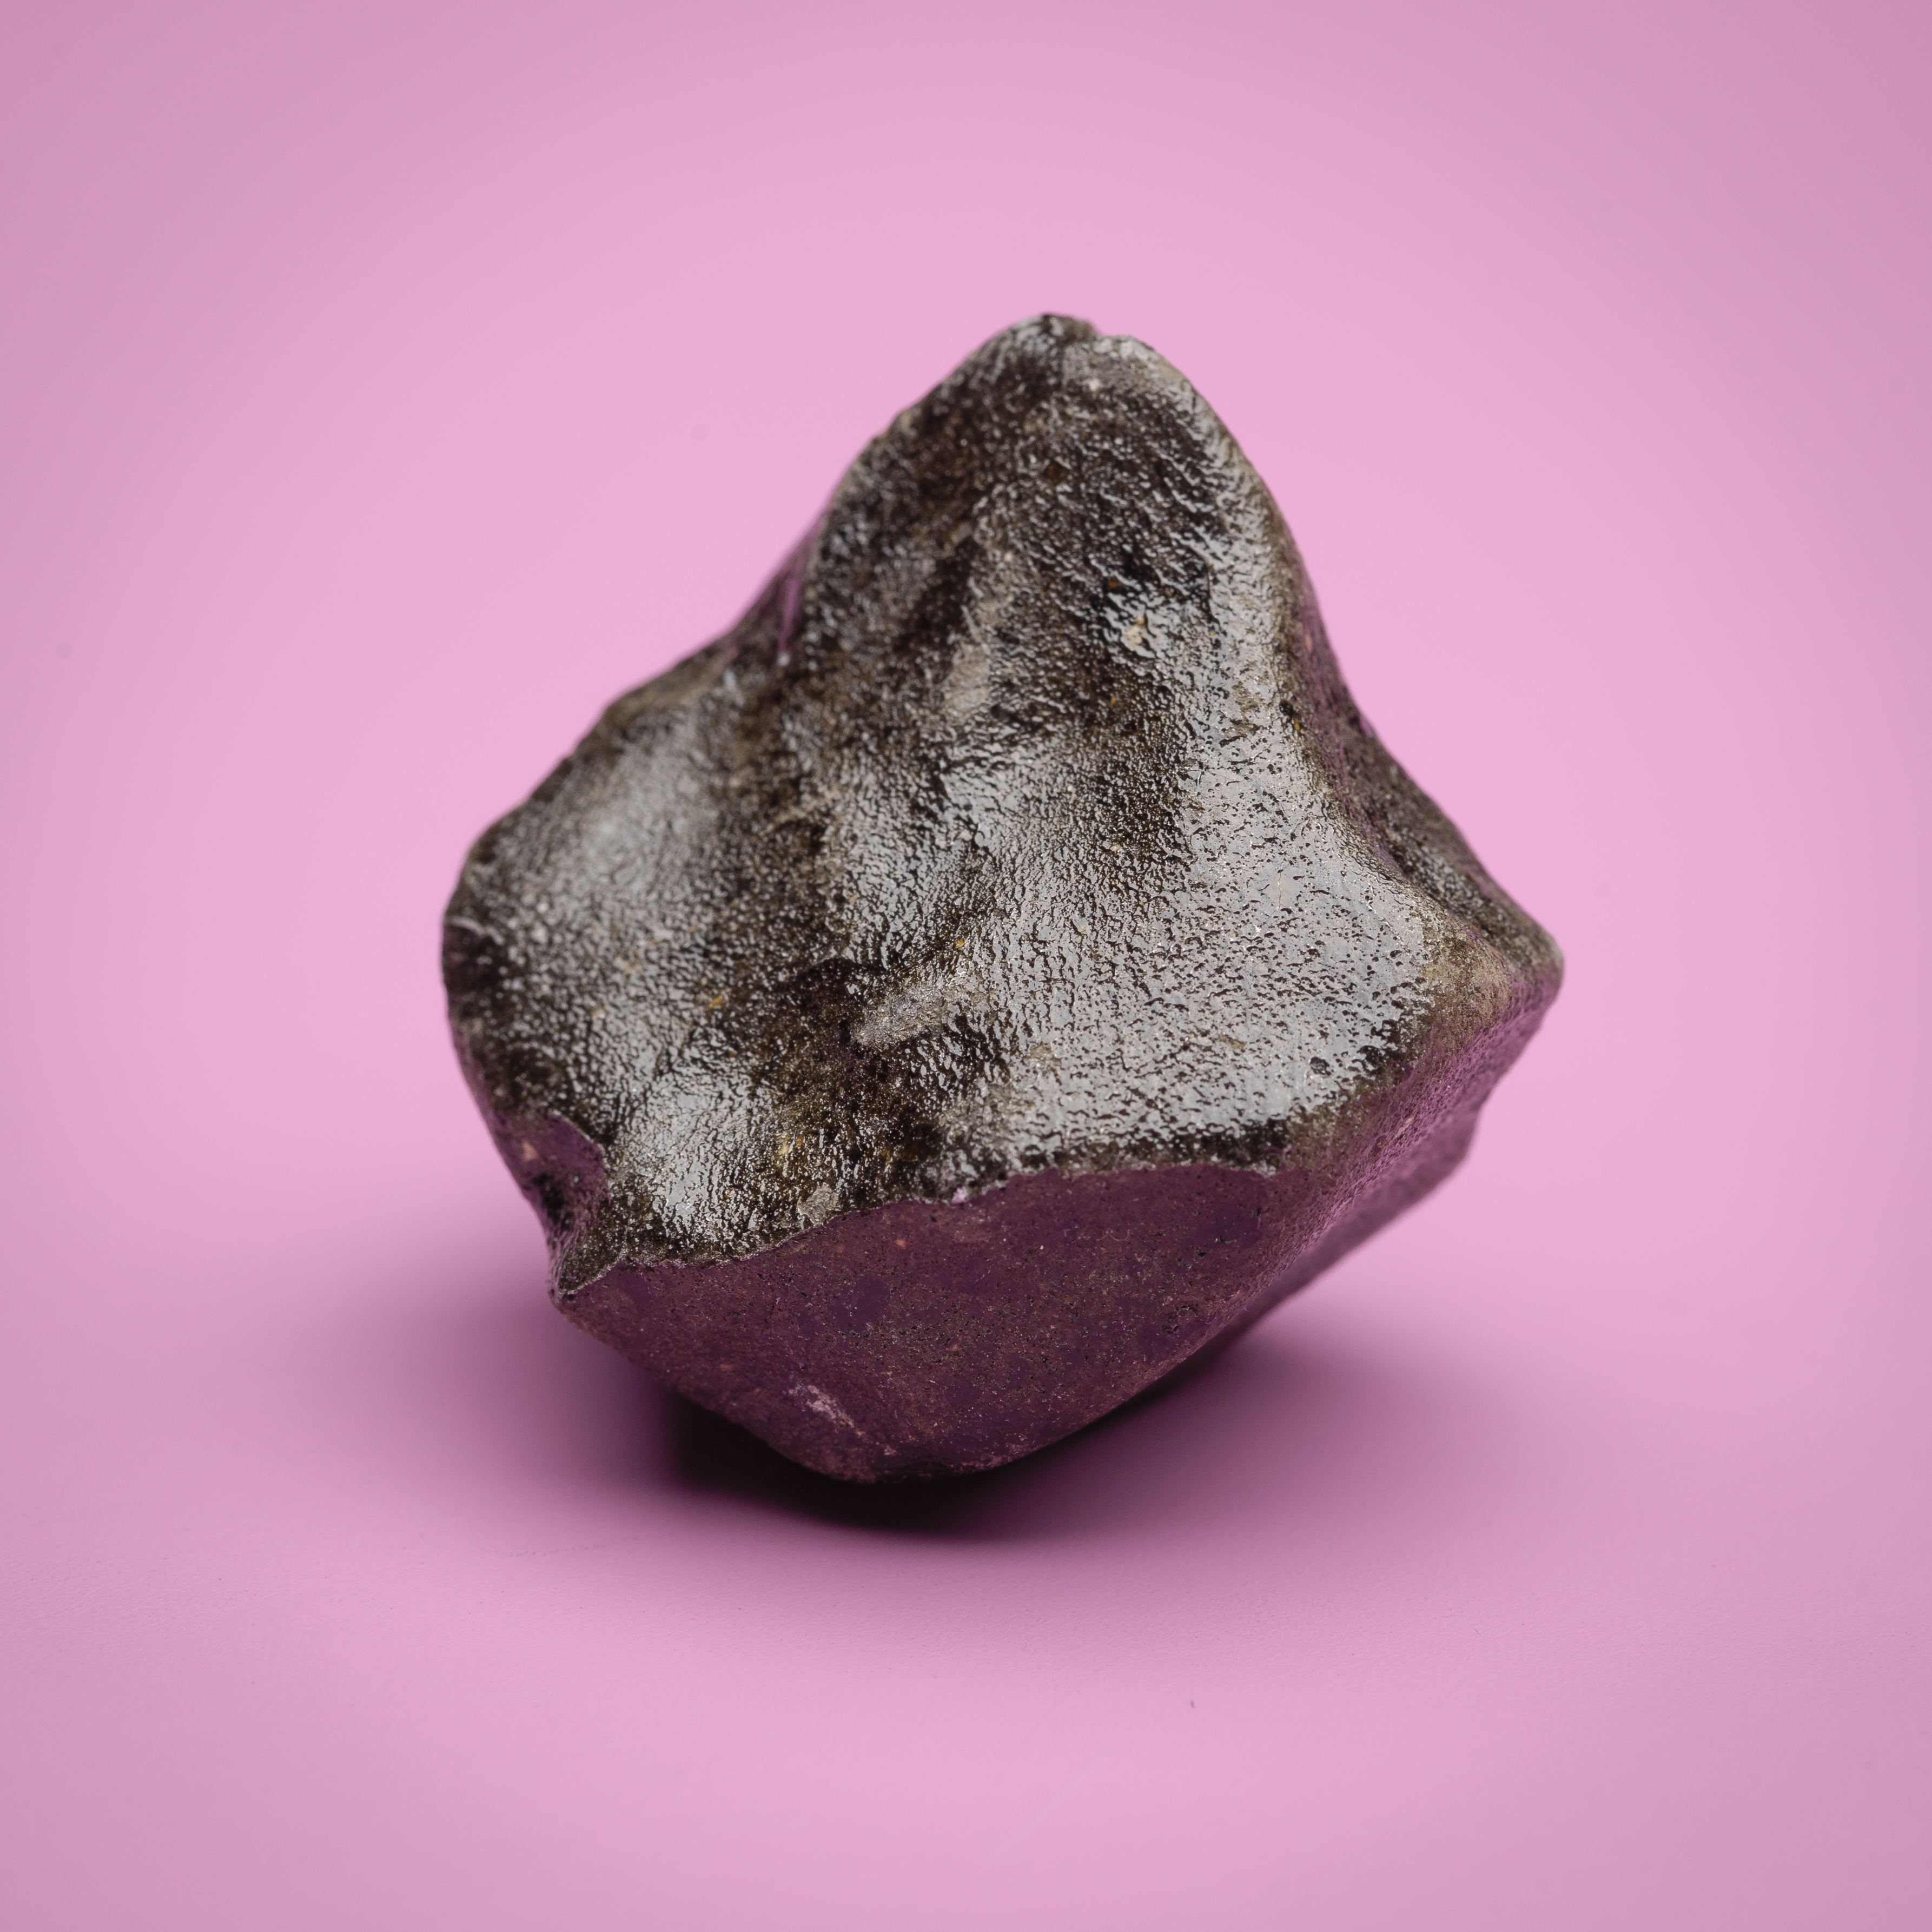 A Sariçiçek meteorite